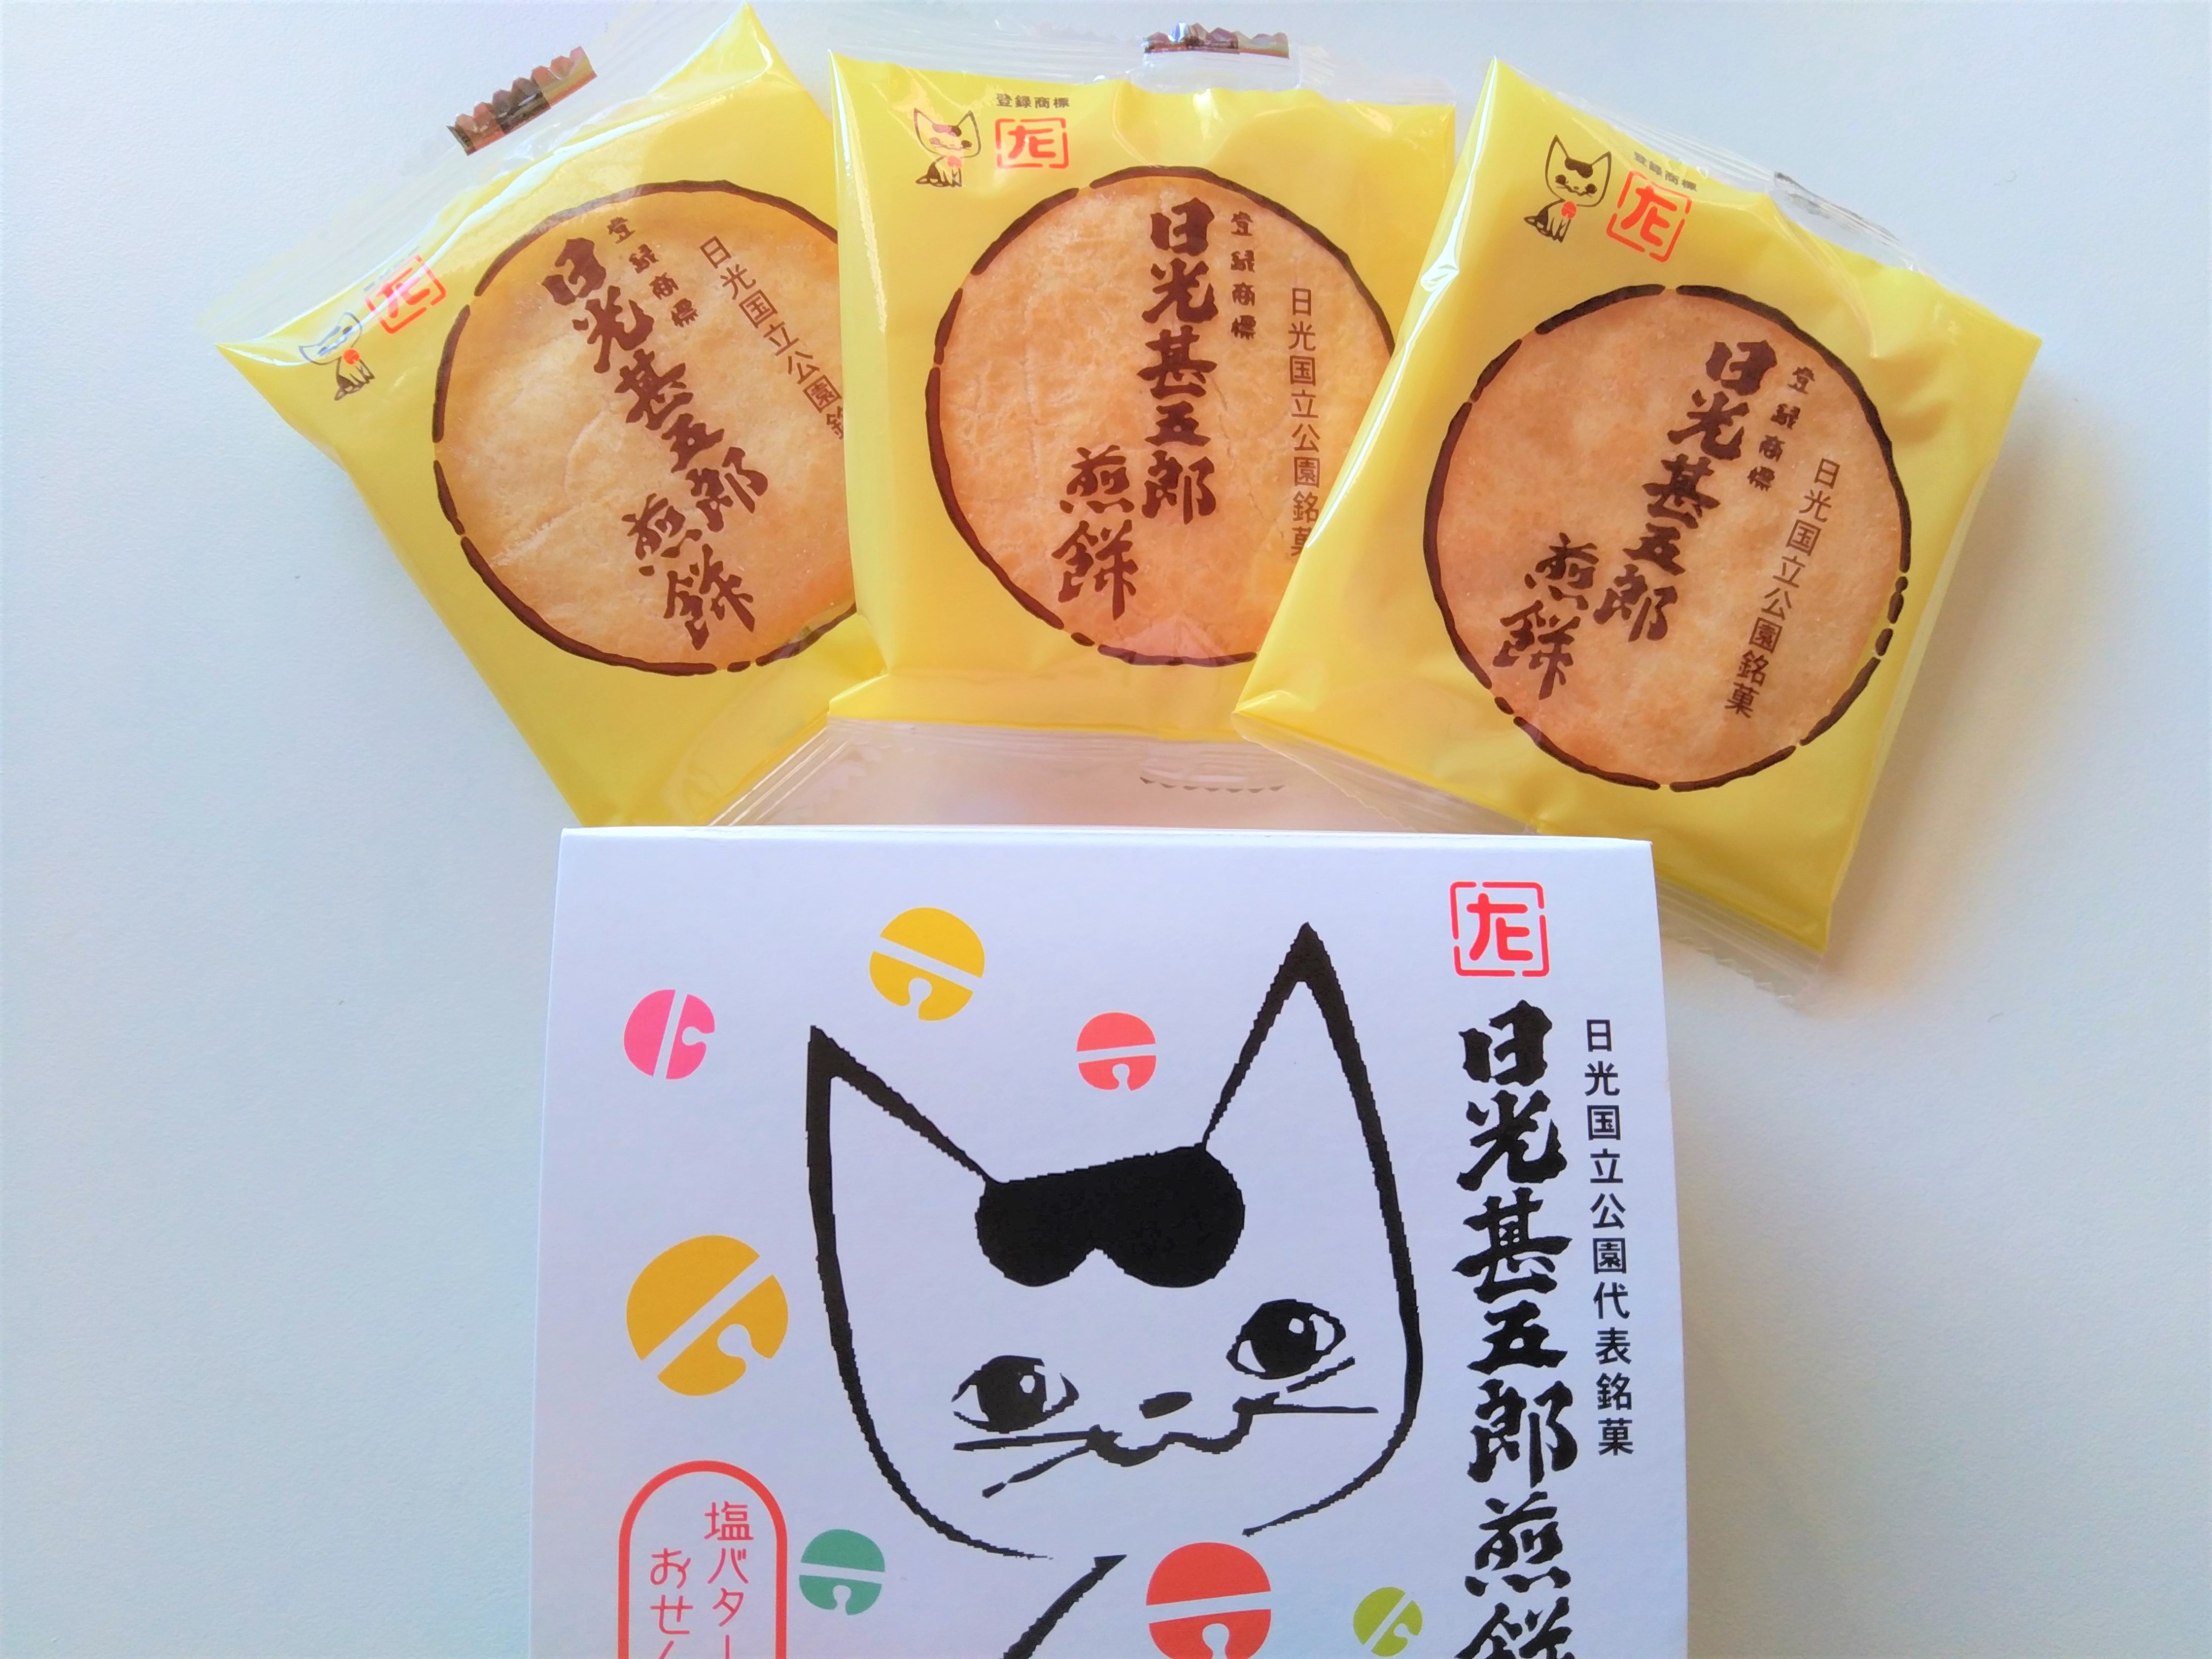 栃木県観光物産協会 みんな大好き 日光甚五郎煎餅 は バターオイルとブレンド塩の組合せが絶妙 眠り猫をイメージしたイラストが 可愛いプチボックスは 5面とも違うデザインになっています プレゼントにも 石田屋 日光市 T Co